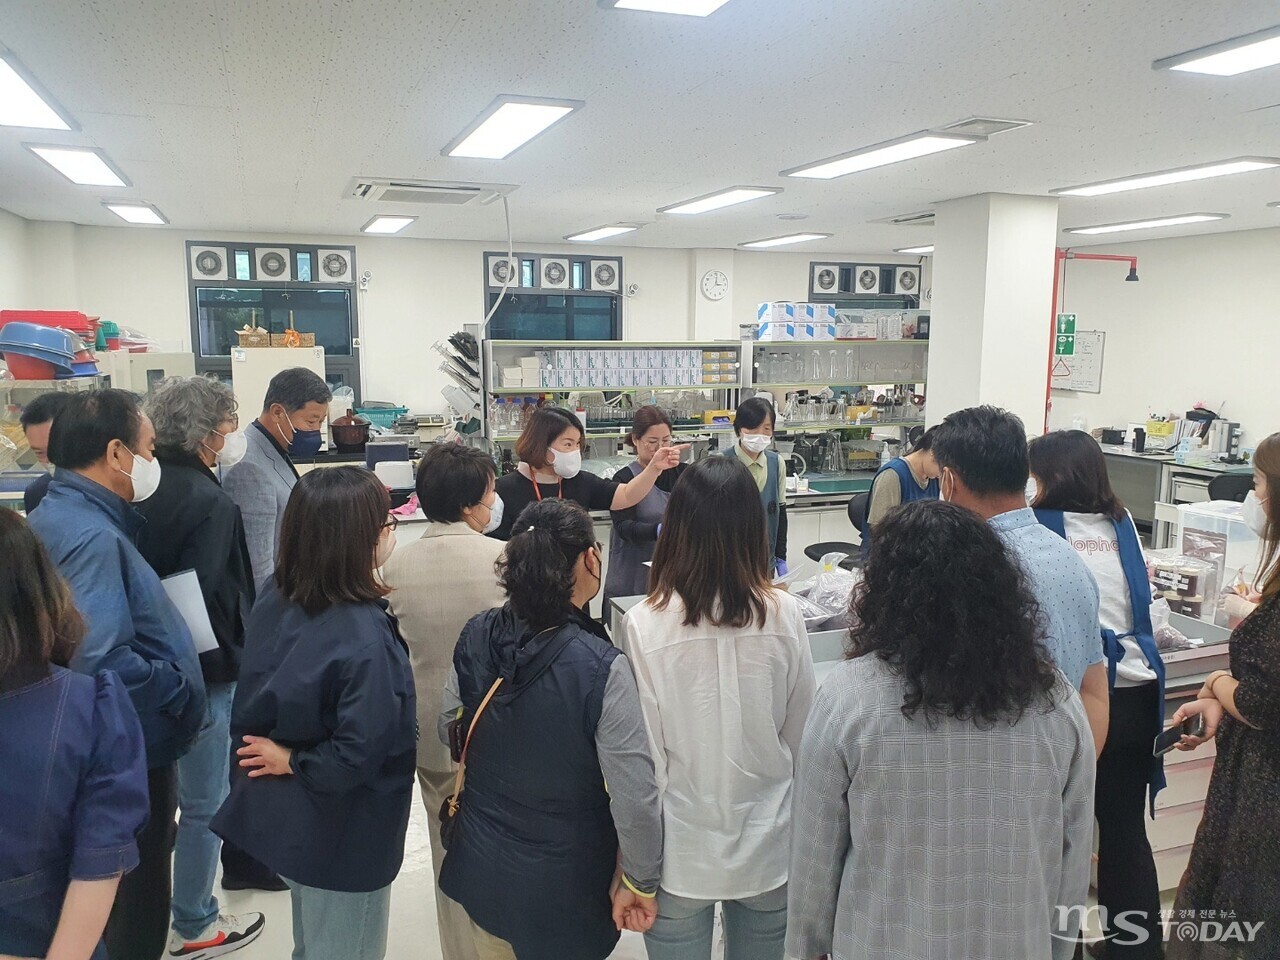  '찾아가는 기술탐색단' 행사가 지난달 26일 강원도농업기술원 농식품연구소에서 열렸다. (사진=강원테크노파트)